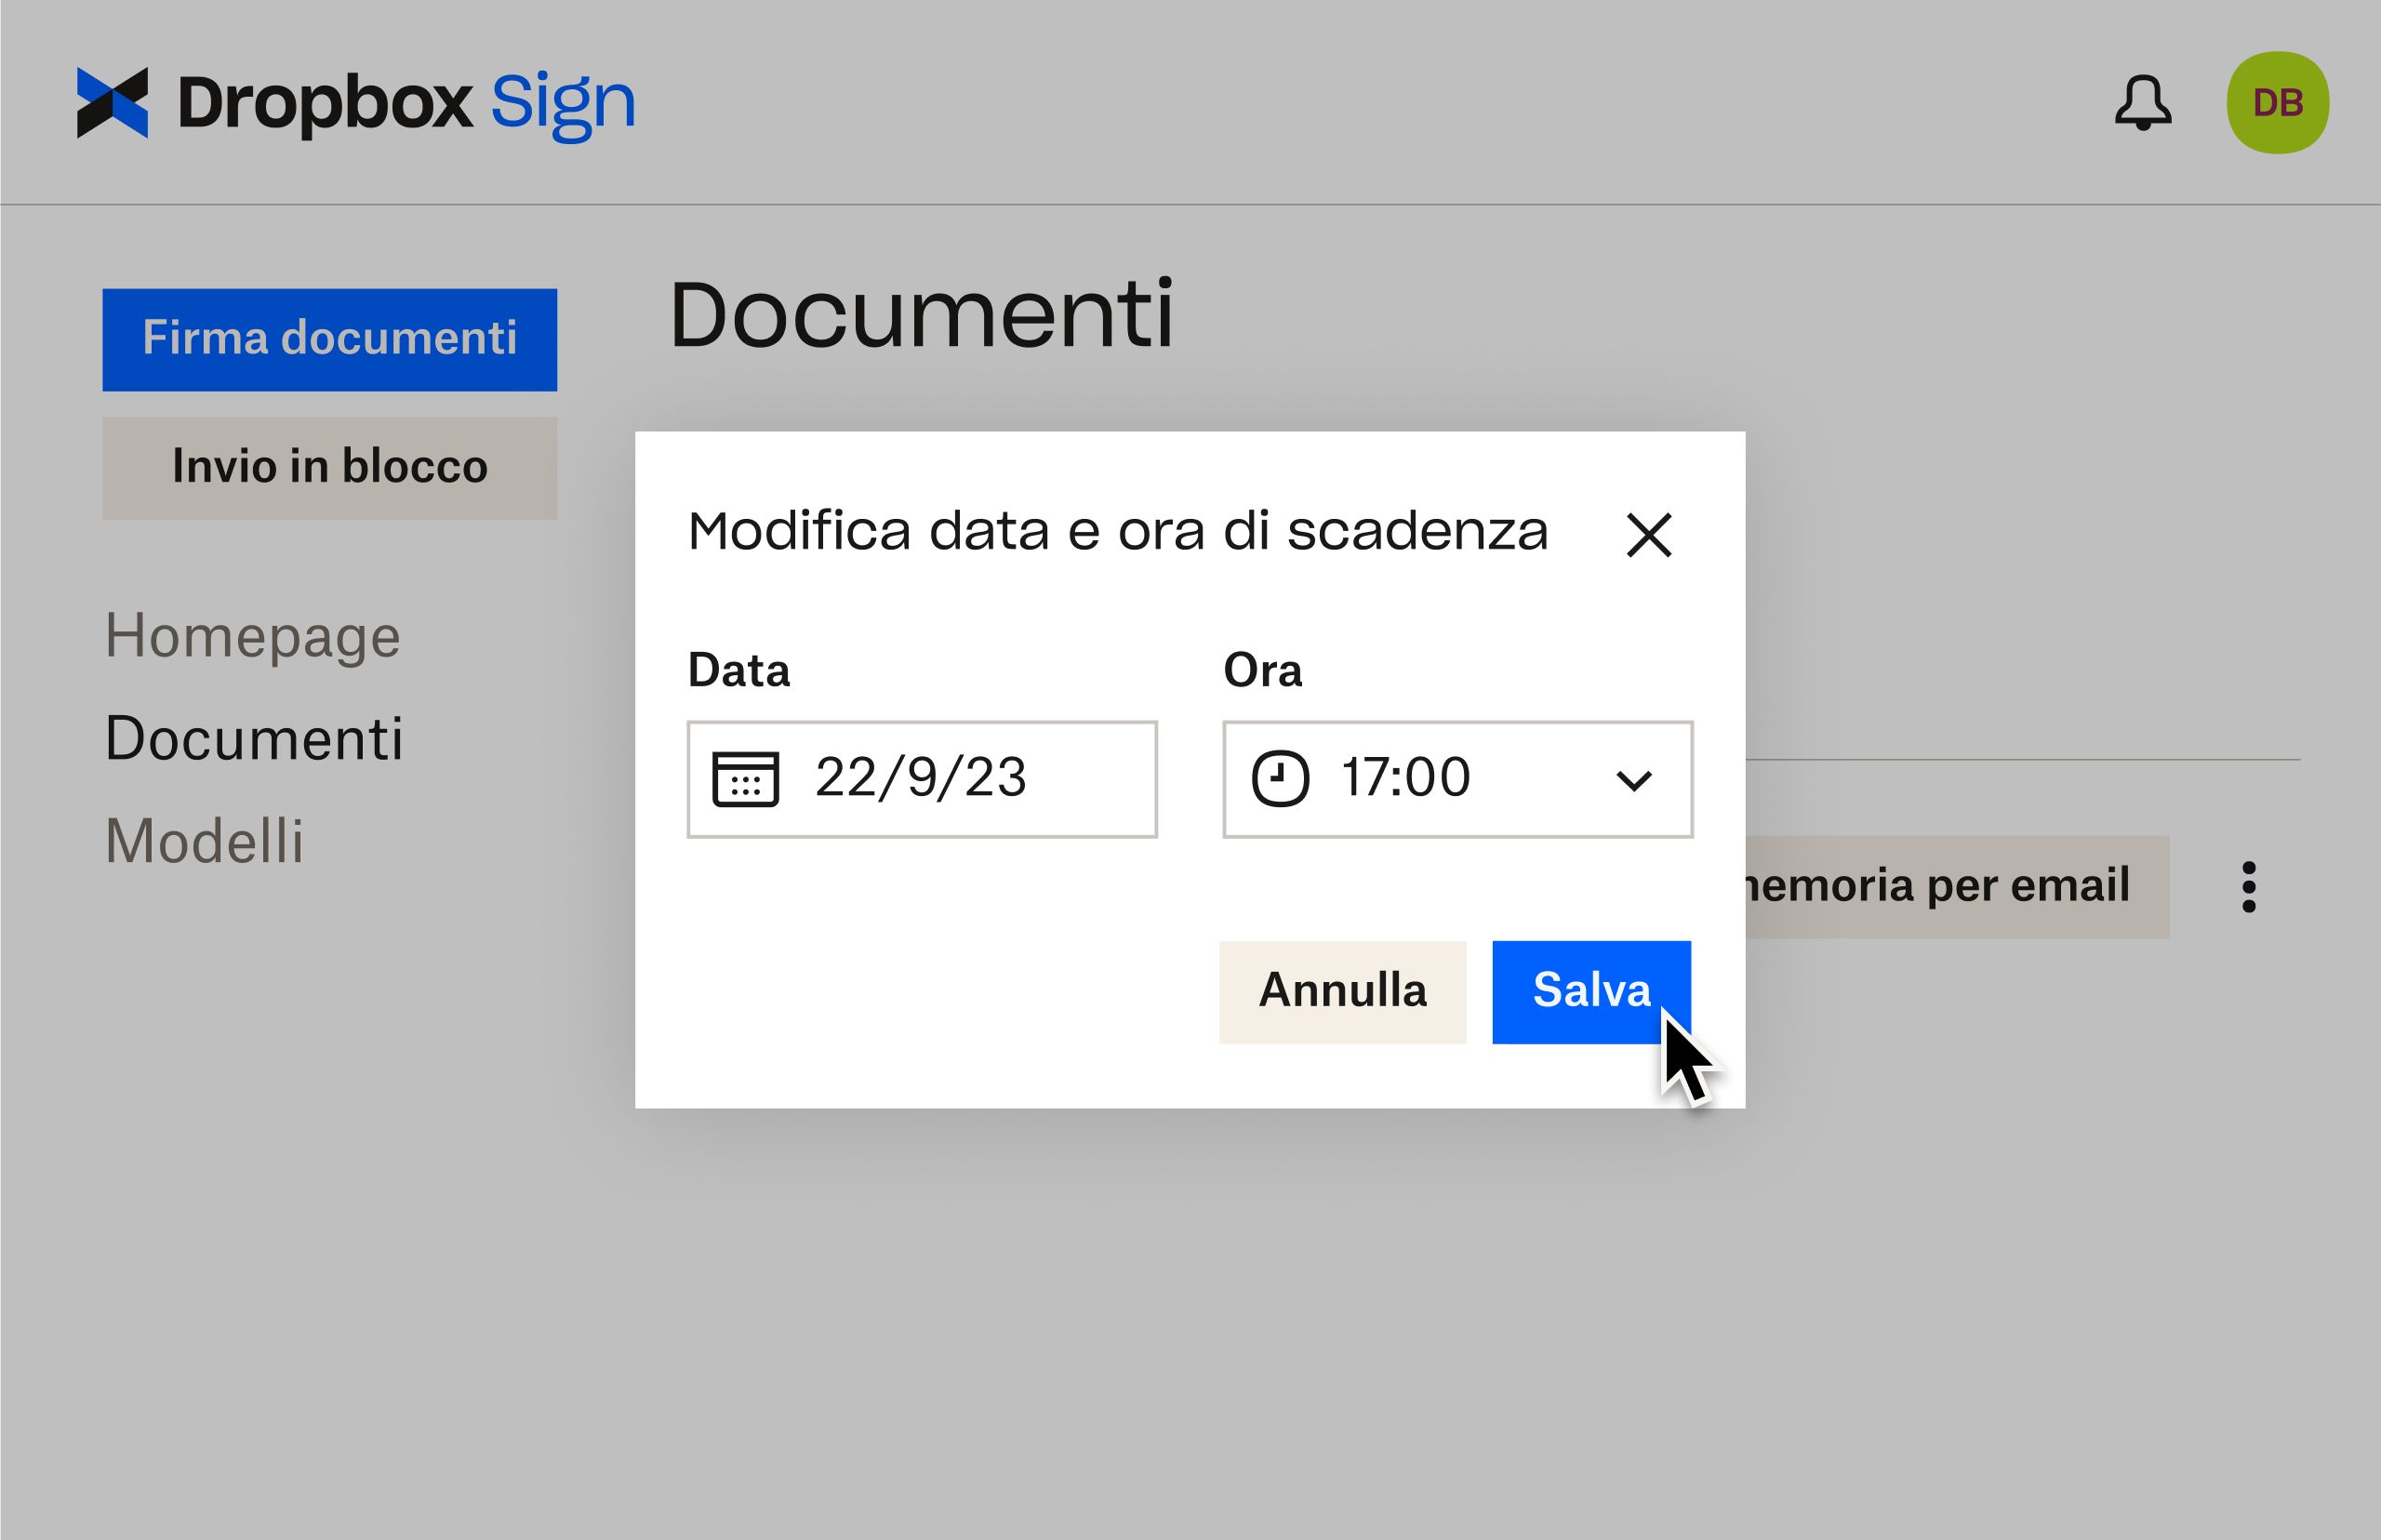 Interfaccia utente di Dropbox Sign che mostra come modificare le date di scadenza dopo l'invio di un documento per la firma